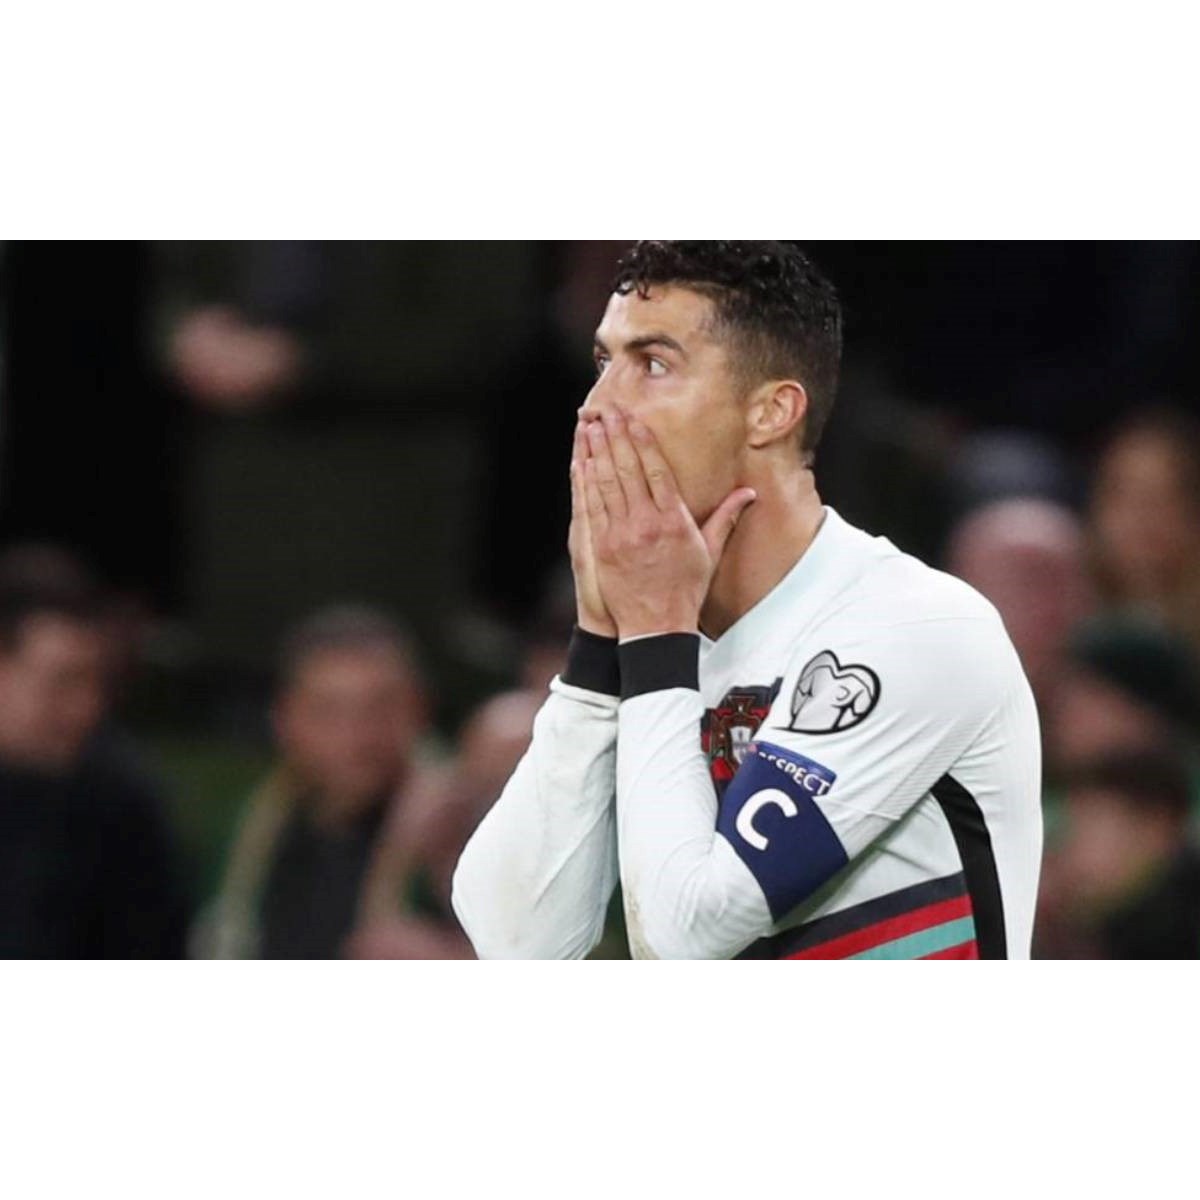 Cristiano Ronaldo bloqueia Transfermarkt no Instagram após ser